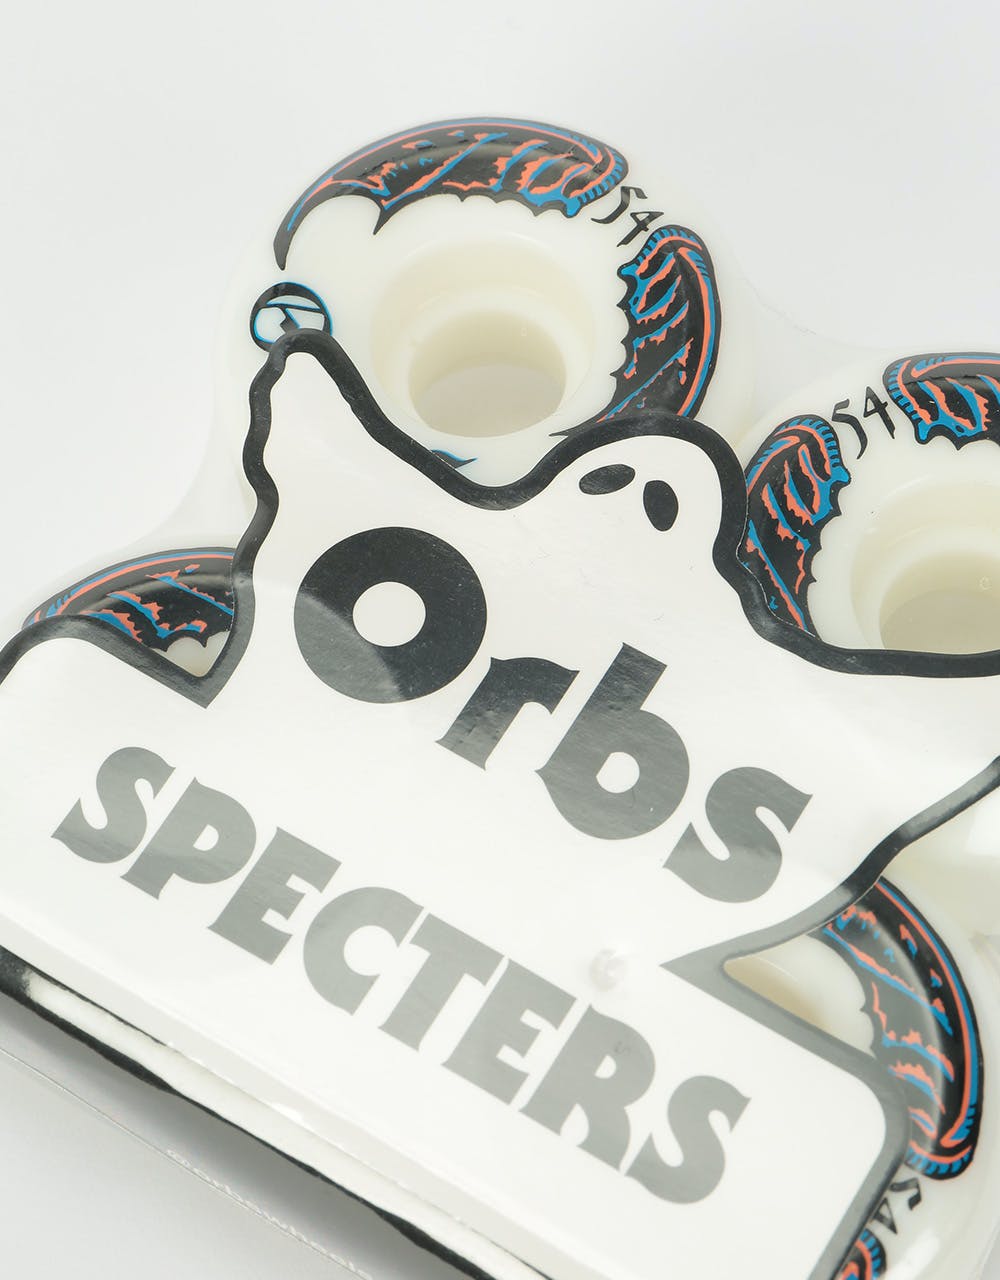 Orbs Specters Whites 99a Skateboard Wheel - 54mm